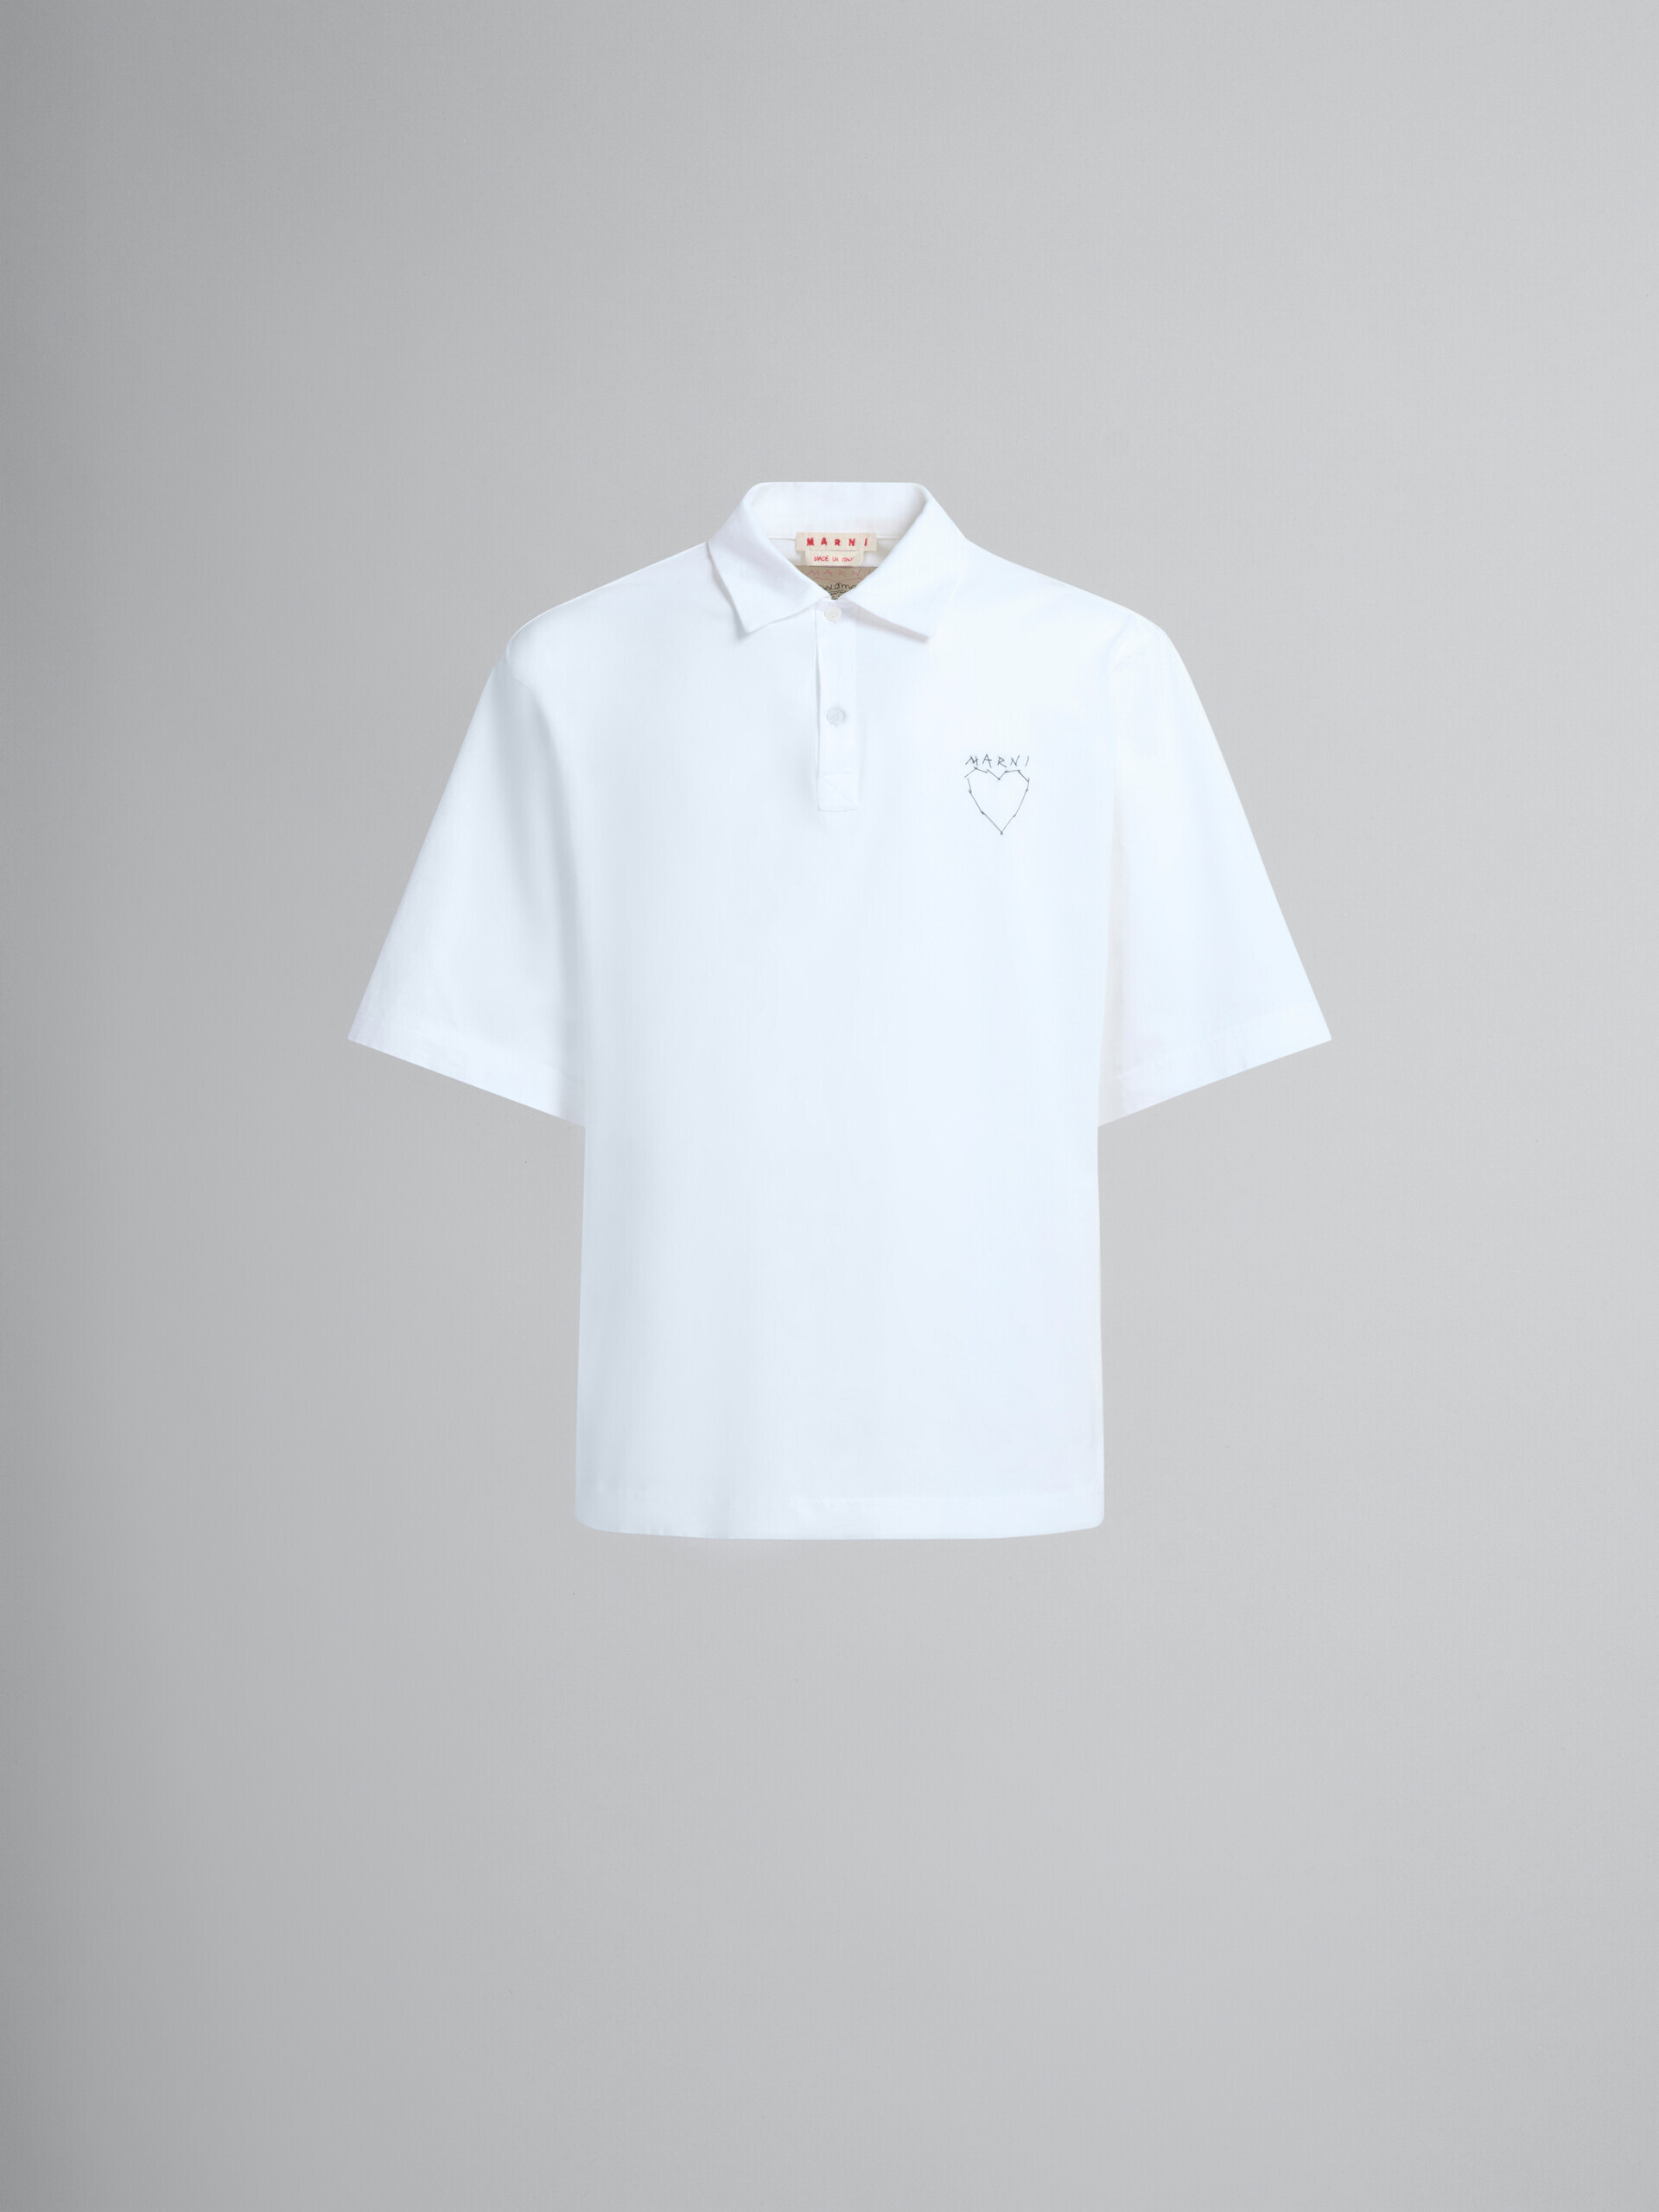 バックプリント入りホワイトのオーガニックジャージーポロシャツ - シャツ - Image 2